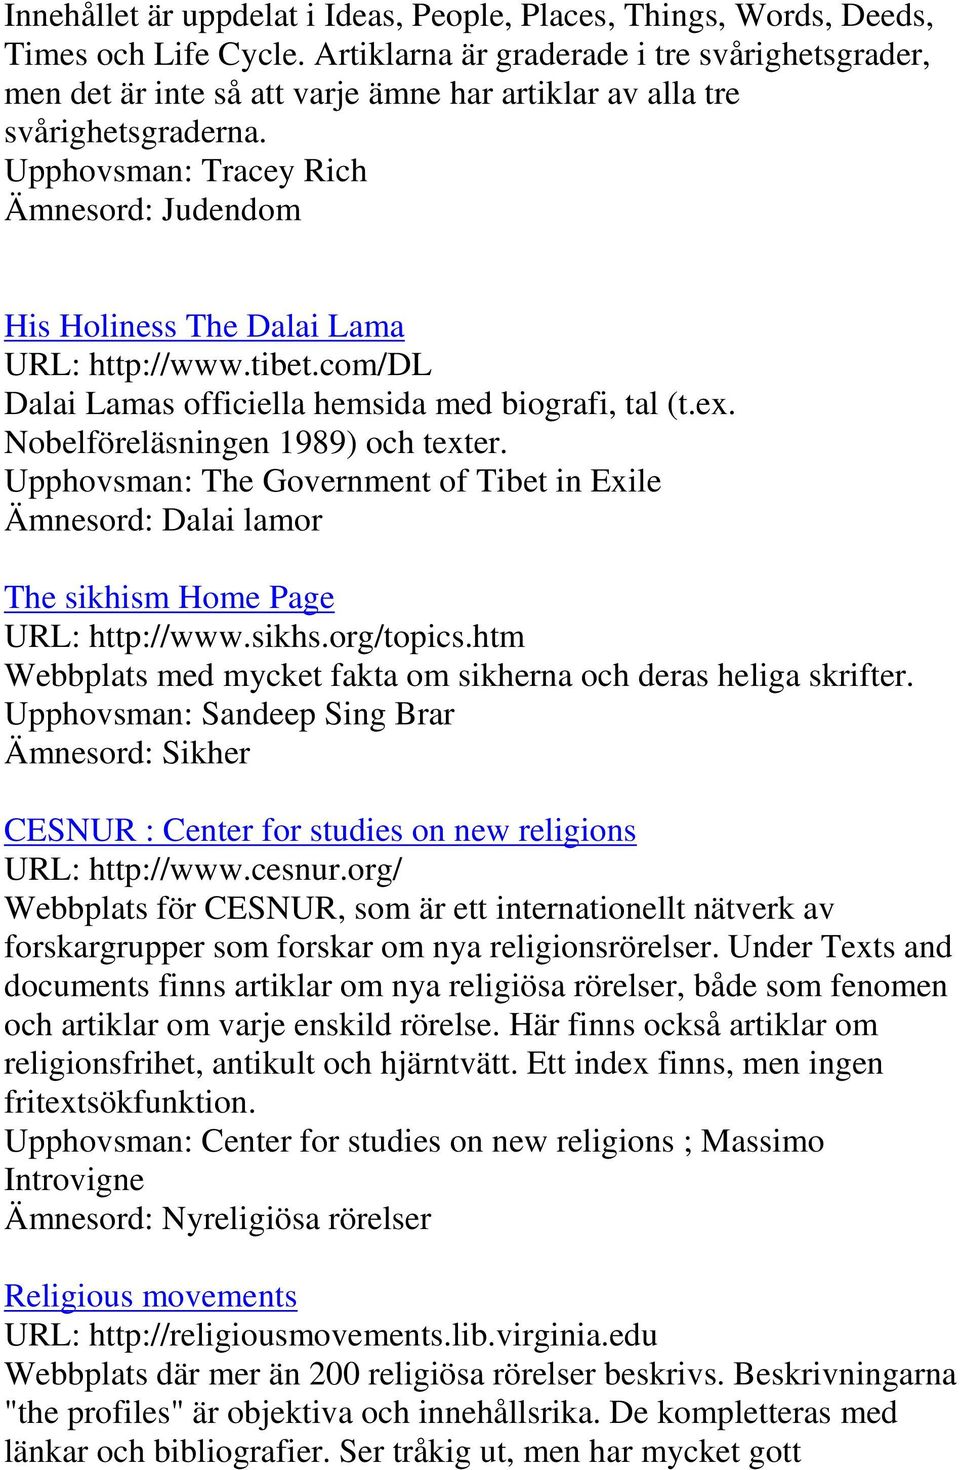 Upphovsman: Tracey Rich Ämnesord: Judendom His Holiness The Dalai Lama URL: http://www.tibet.com/dl Dalai Lamas officiella hemsida med biografi, tal (t.ex. Nobelföreläsningen 1989) och texter.